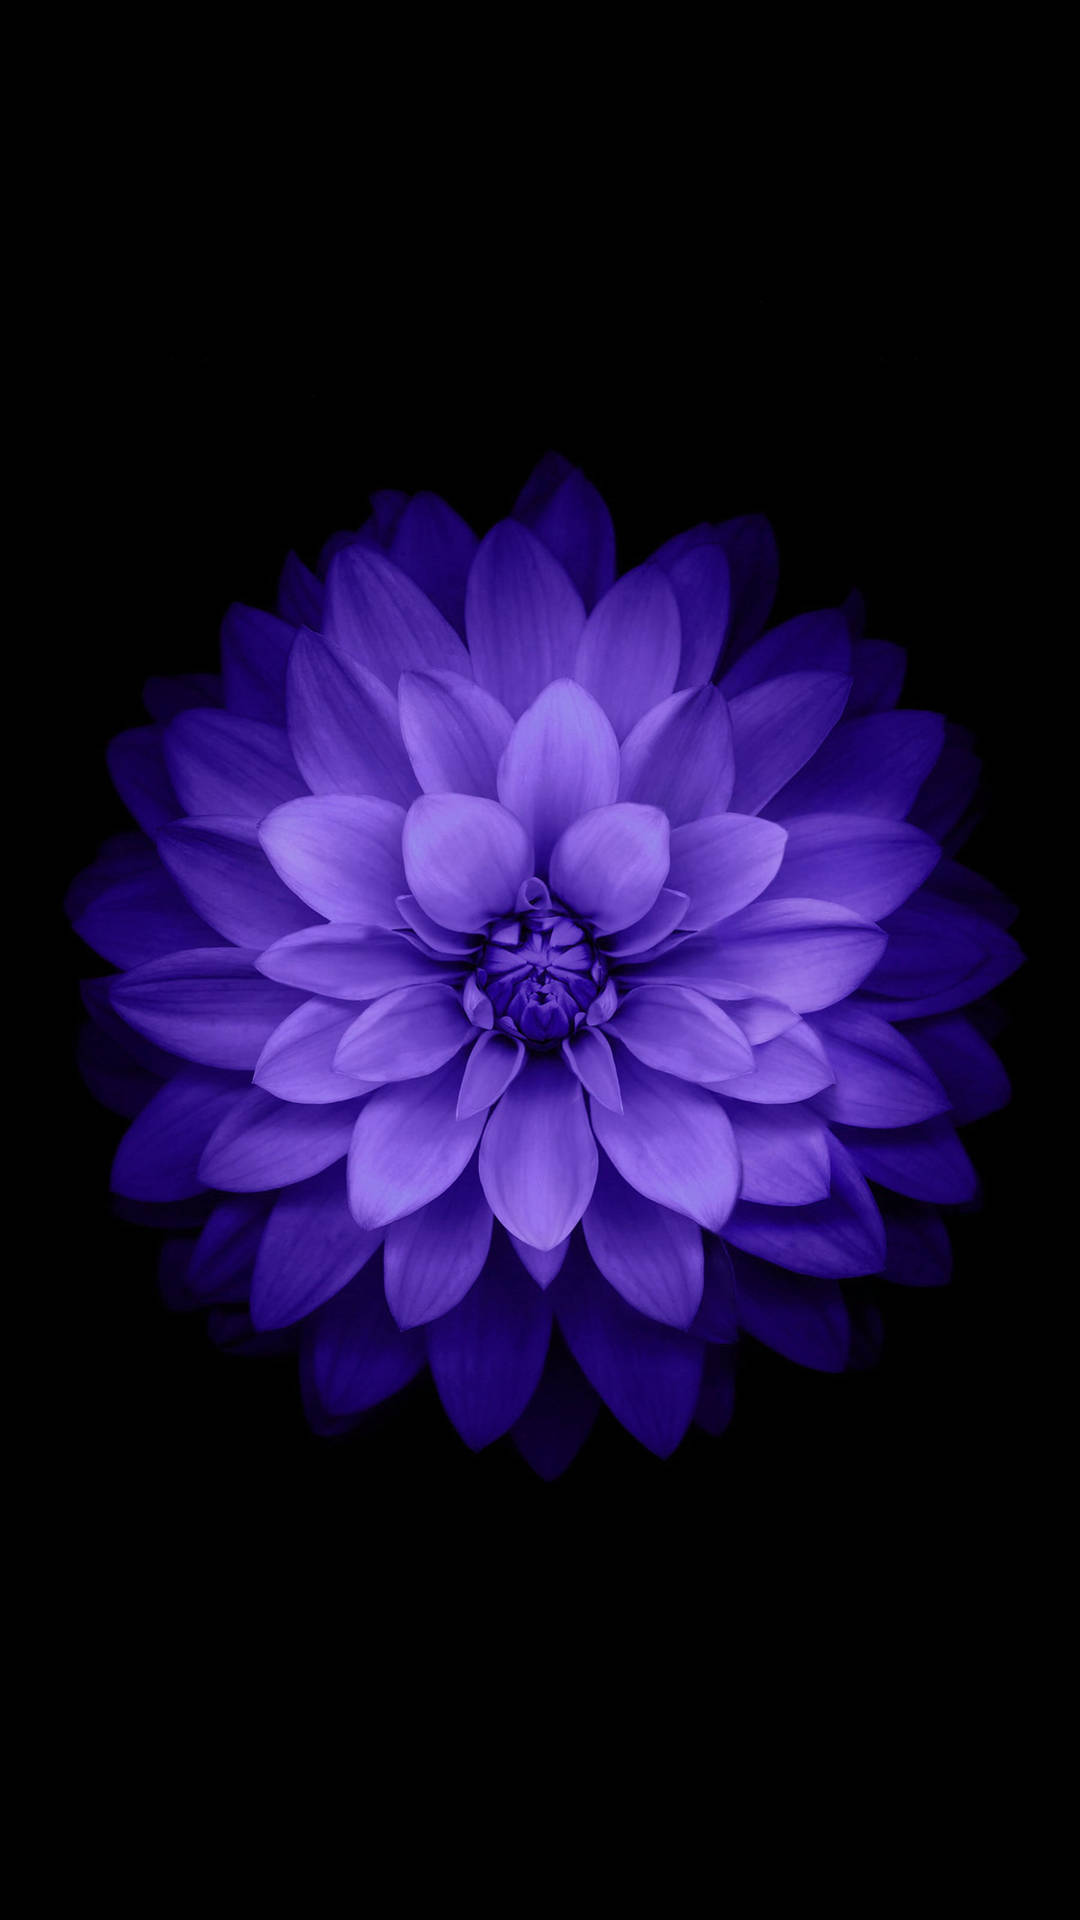 aesthetic-purple-dahlia-flower-mobile-lv68f3om7f7z1zv8.jpg